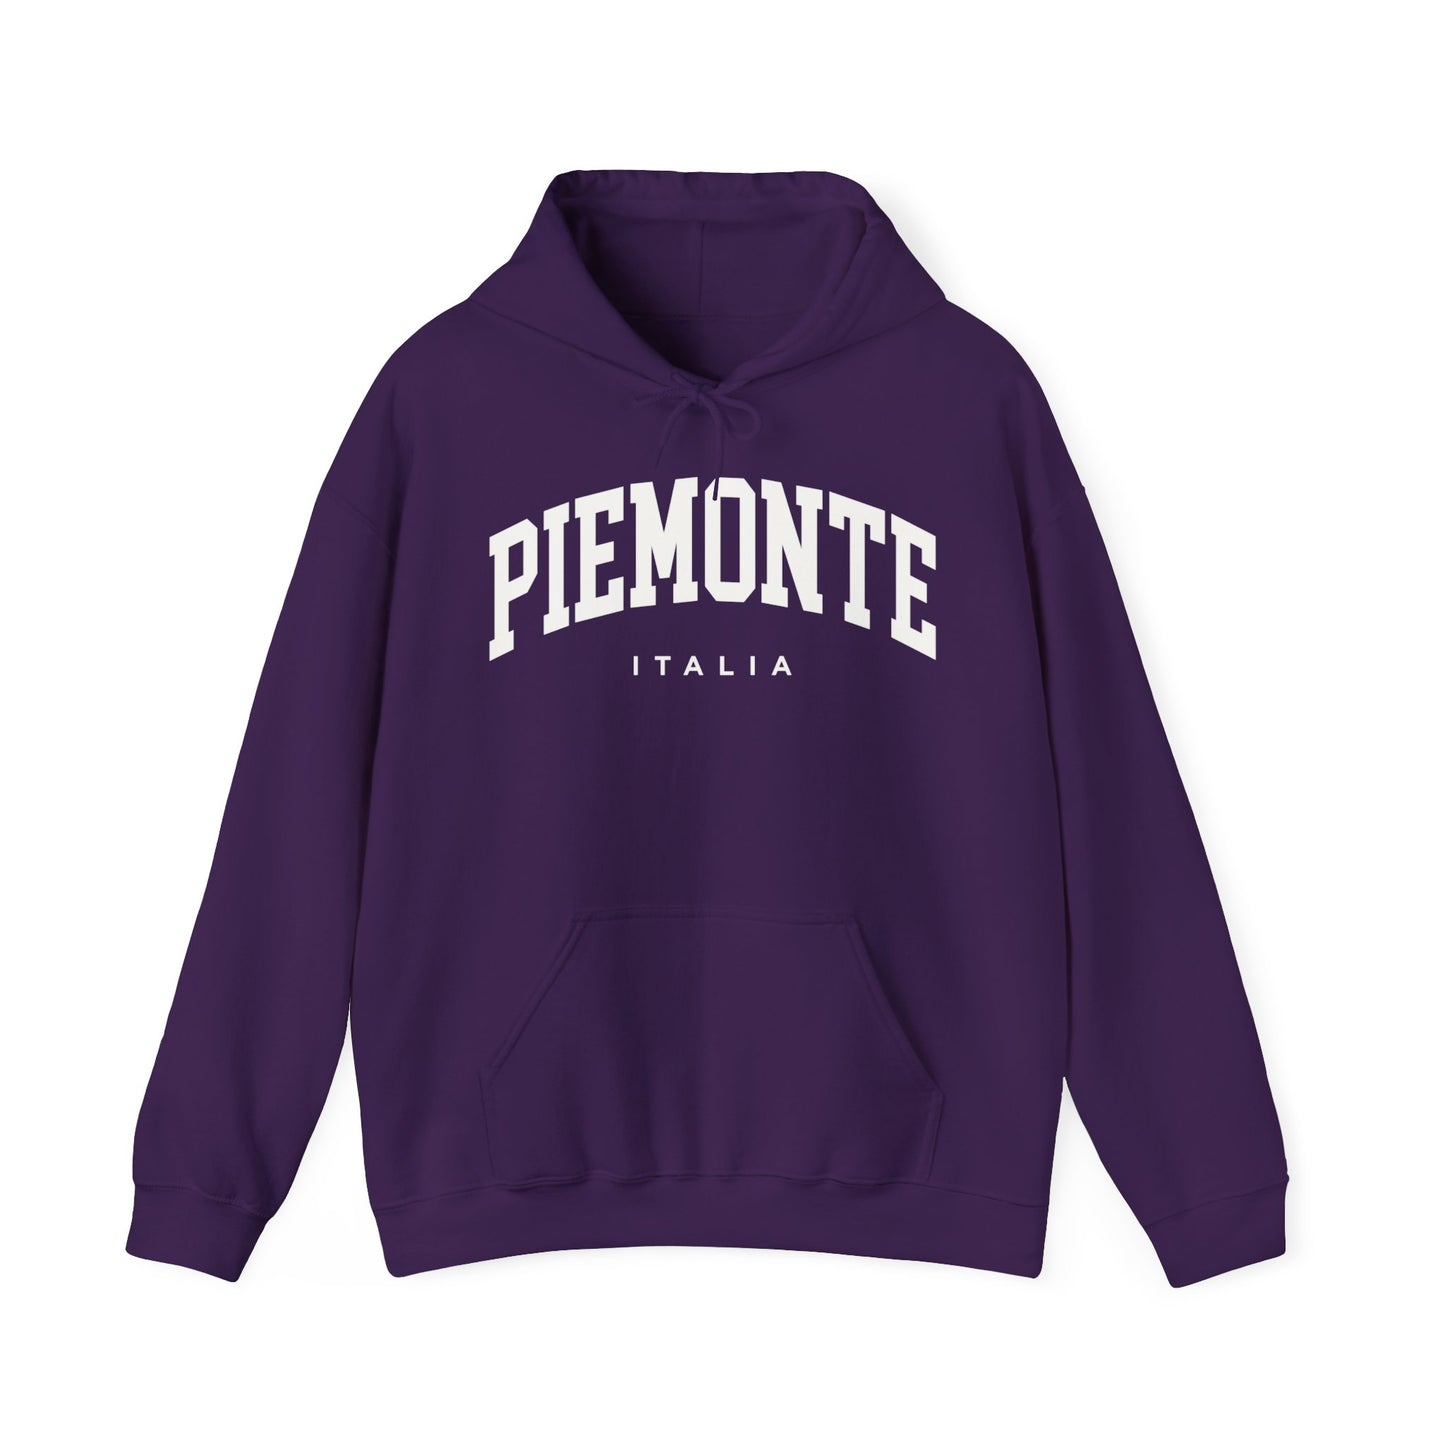 Piedmont Italy Hoodie